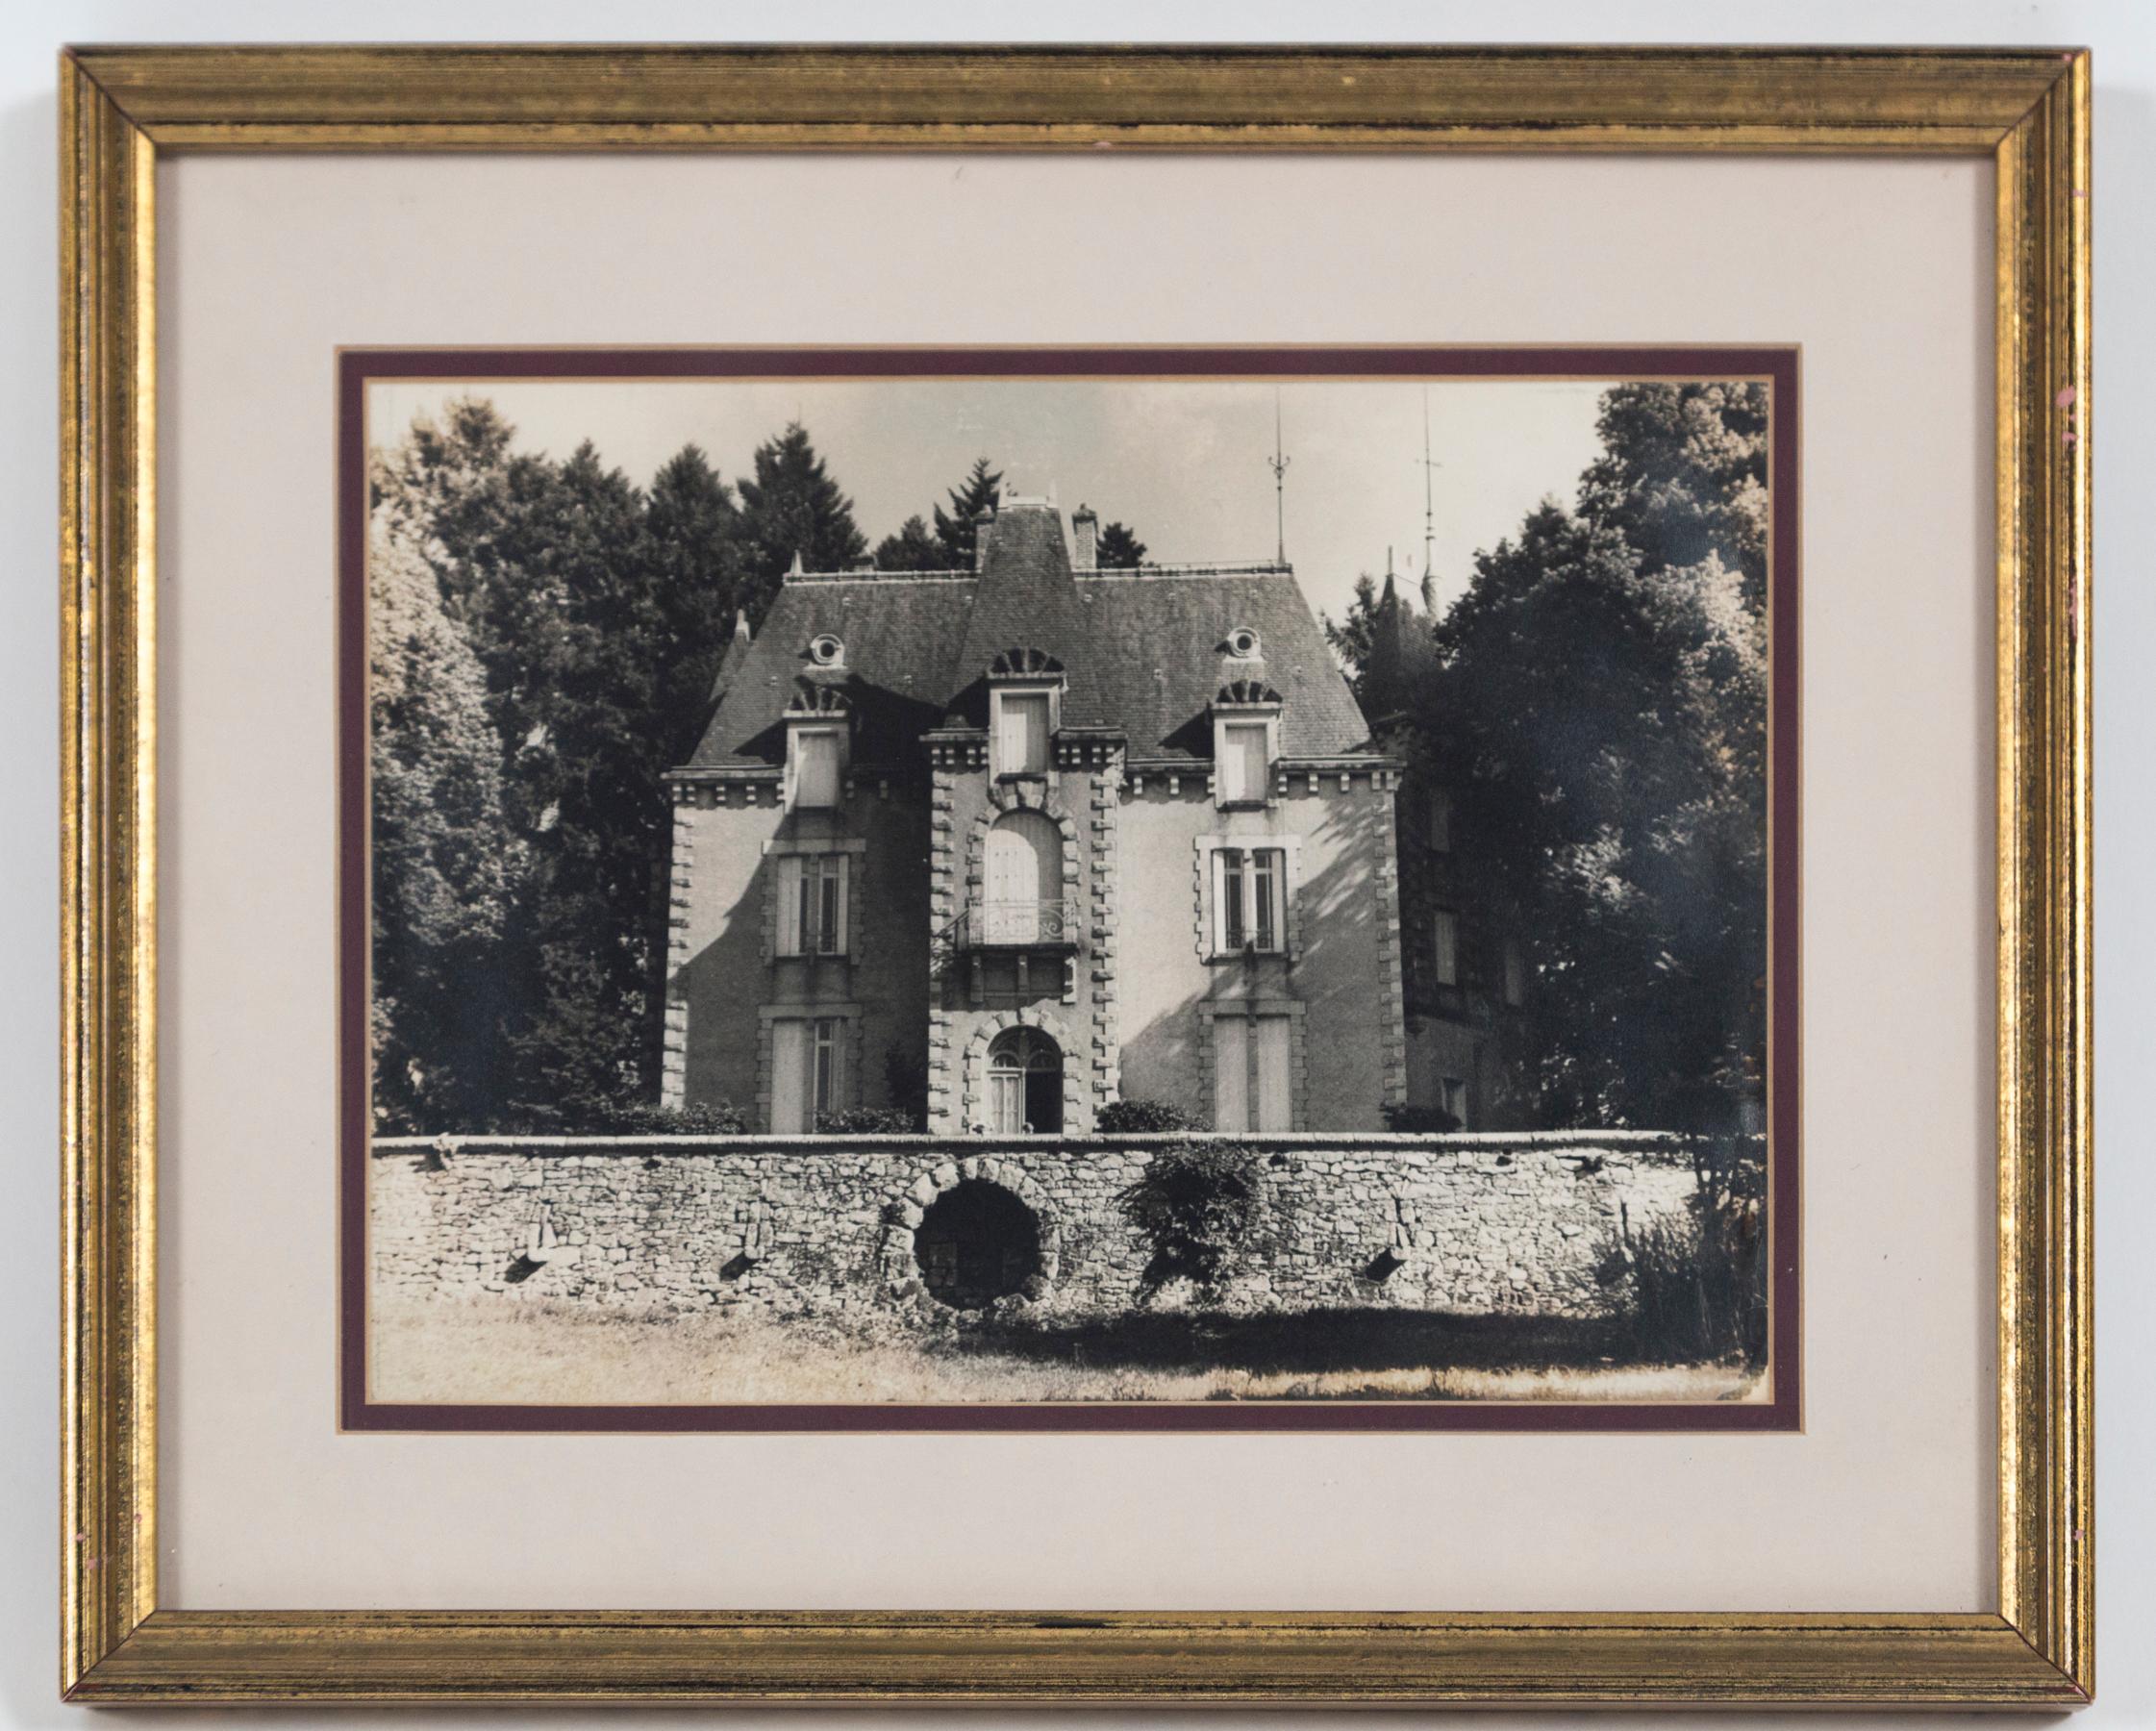 Gerahmte Schwarz-Weiß-Fotografie, Le Chateau, Frankreich, ca. 1950er Jahre. Ein bezauberndes Bild eines Schlosses auf dem Lande in Frankreich. Professionell gerahmt und mattiert. Provenienz: Nachlass von Janine Metz, Privatsekretärin der Herzogin